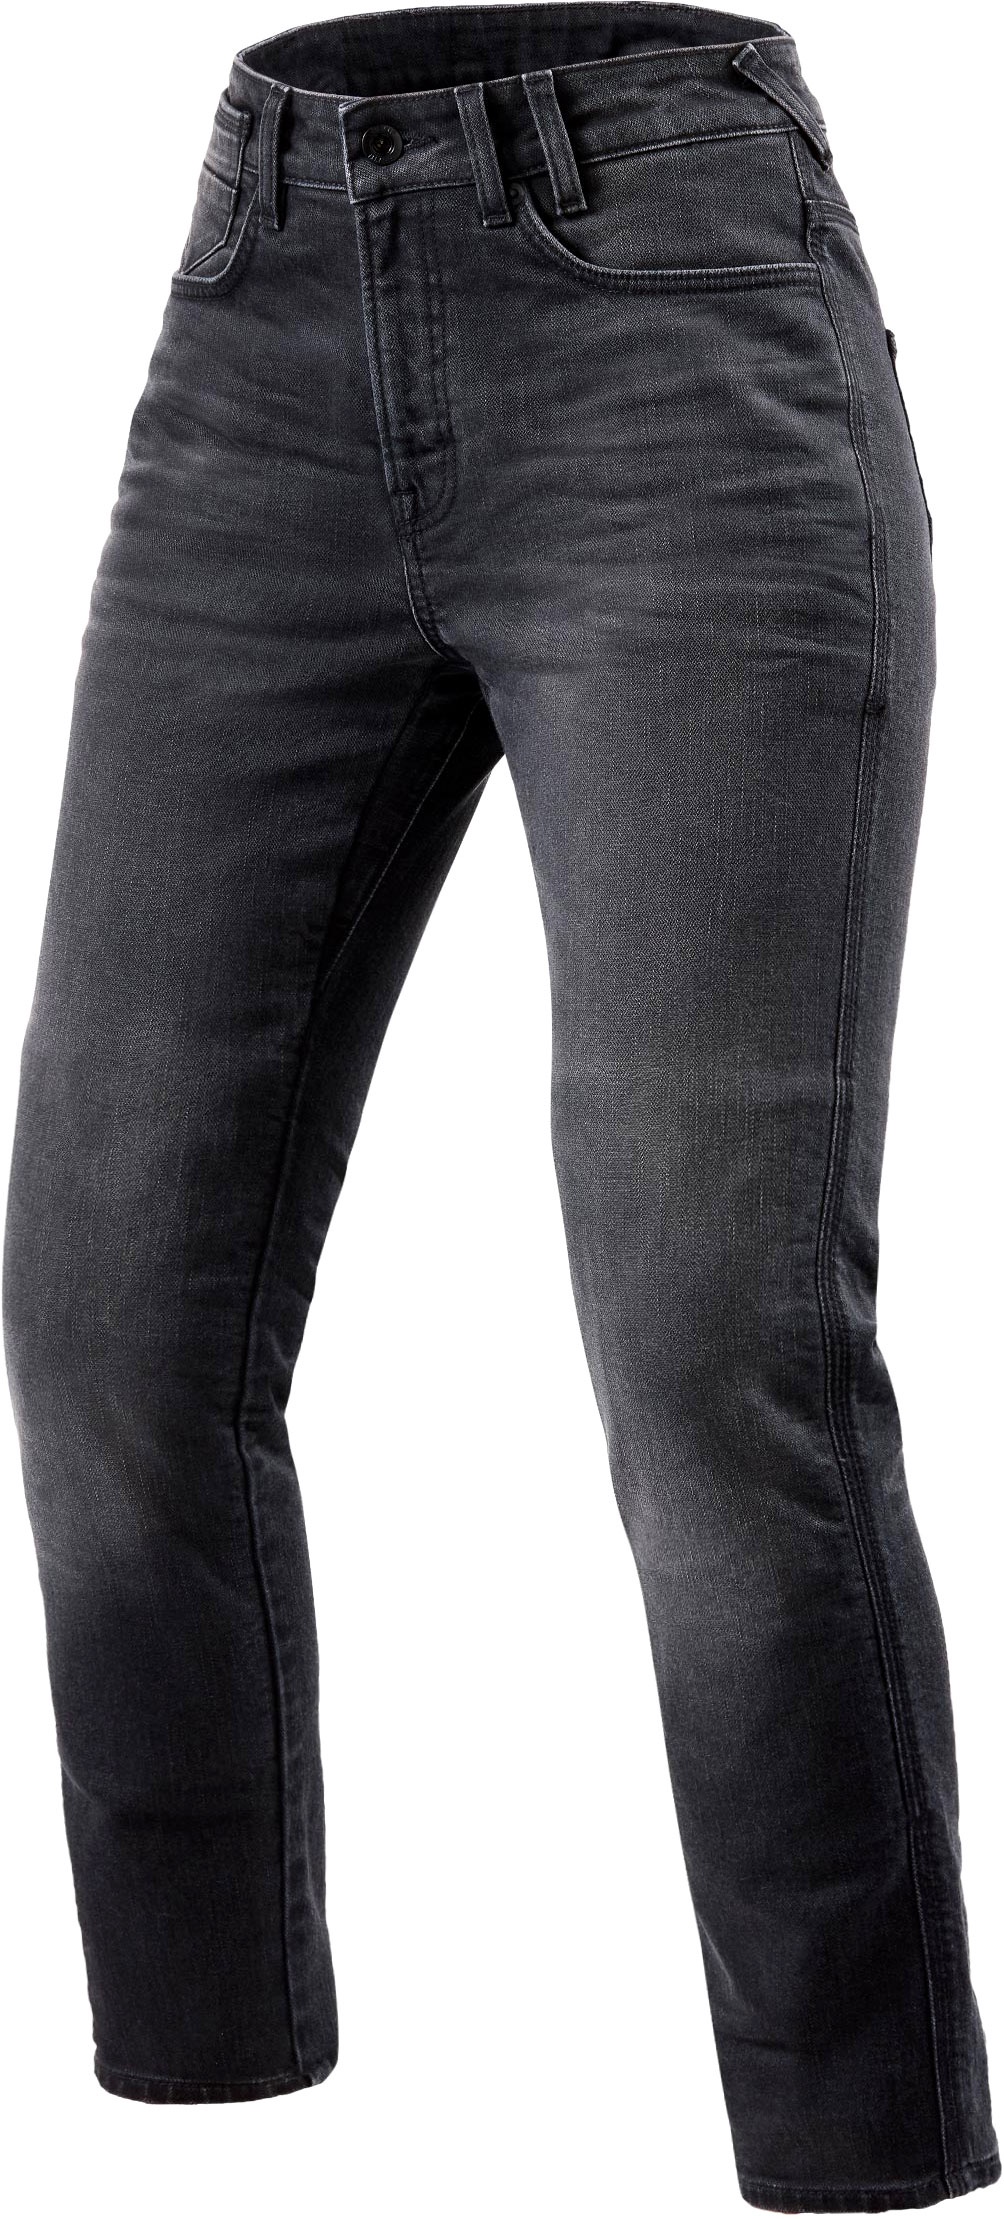 Revit Victoria 2, jeans femmes - Gris - W24/L32